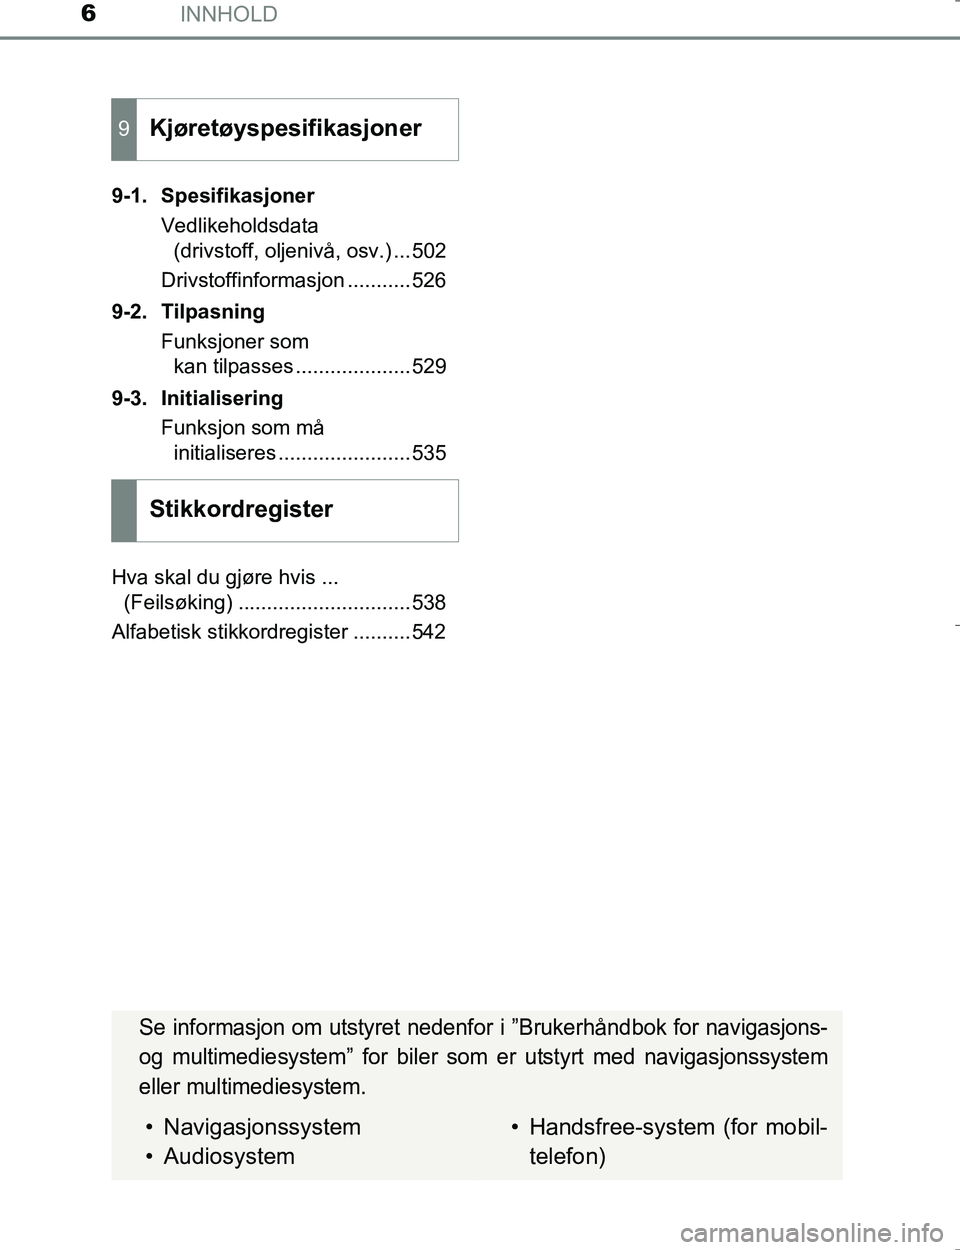 TOYOTA HILUX 2016  Instruksjoner for bruk (in Norwegian) INNHOLD6
OM0K196E9-1. Spesifikasjoner
Vedlikeholdsdata (drivstoff, oljenivå, osv.) ...502
Drivstoffinformasjon ...........526
9-2. Tilpasning Funksjoner som kan tilpasses ....................529
9-3.